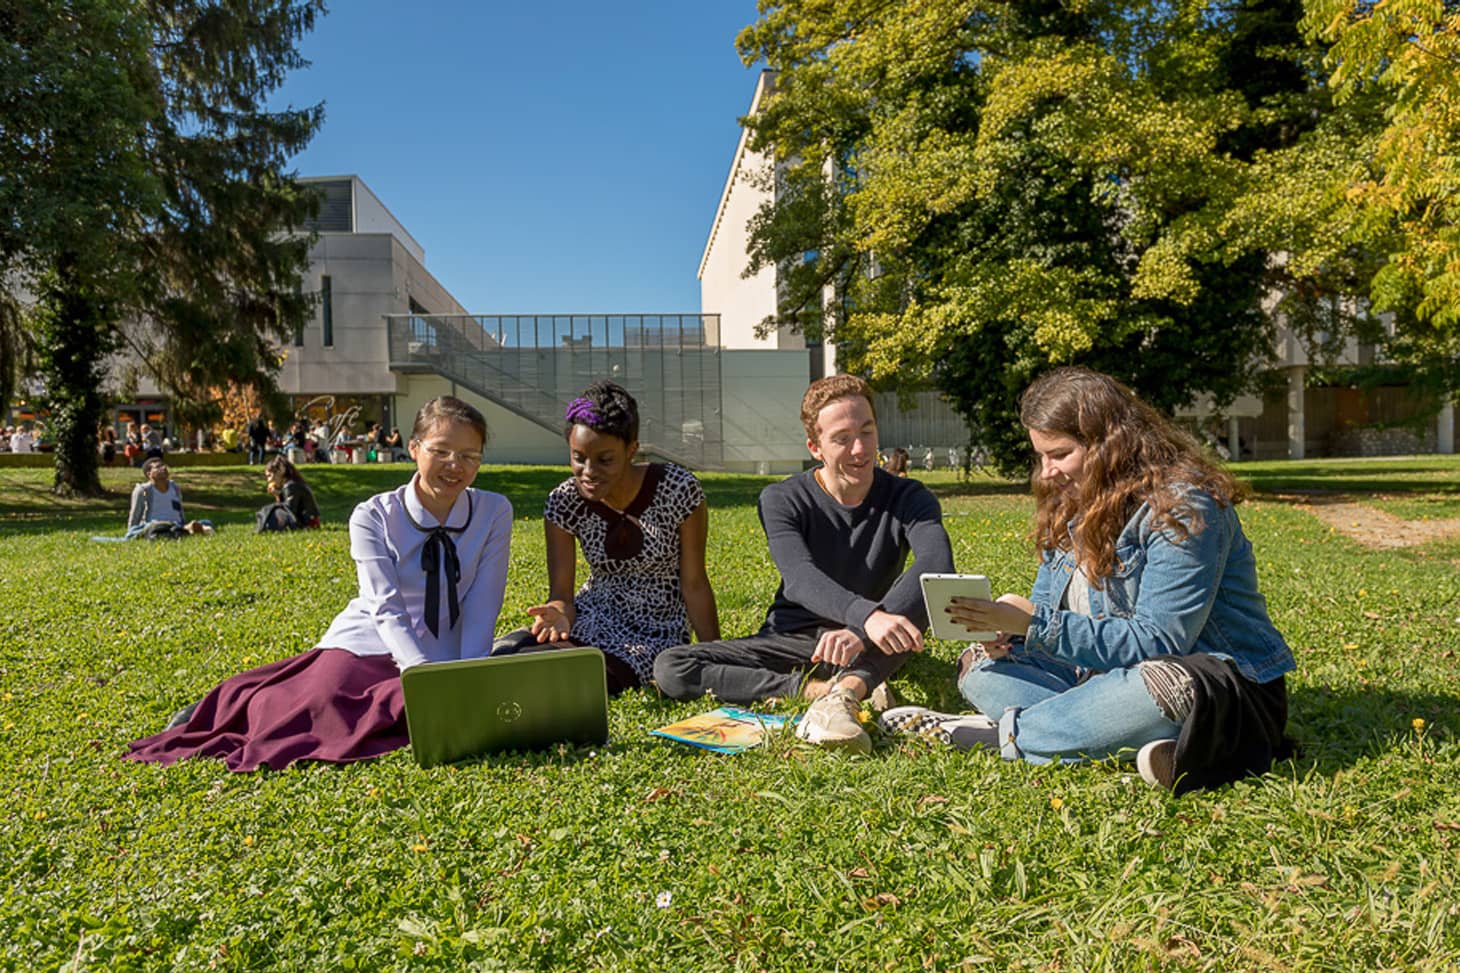 Etudiants internationaux sur le campus de l'UGA. Photo de Pierre Jayet